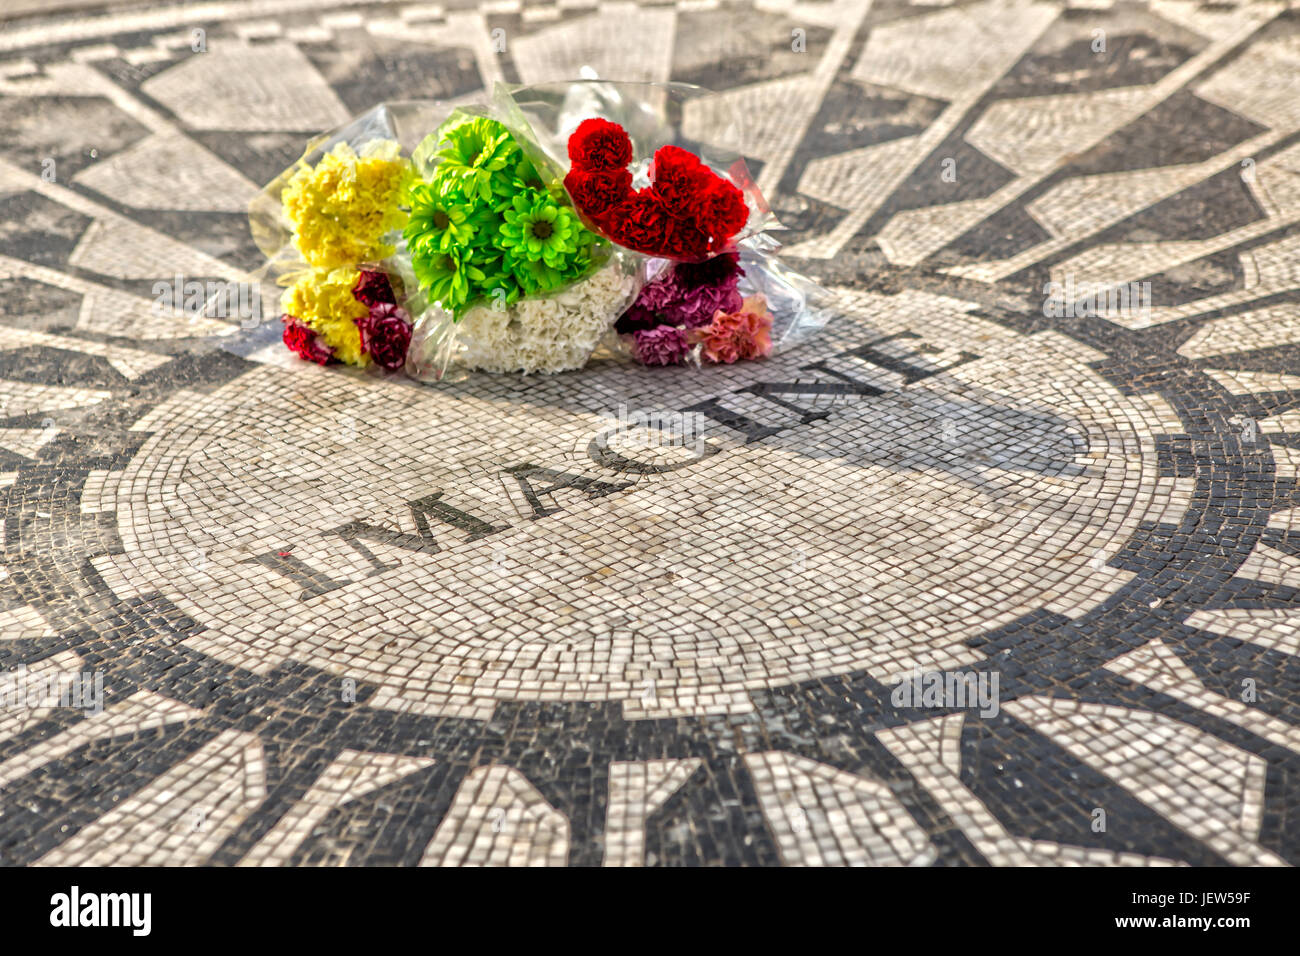 Imaginer Les Strawberry Fields Central Park à New York avec des fleurs Banque D'Images